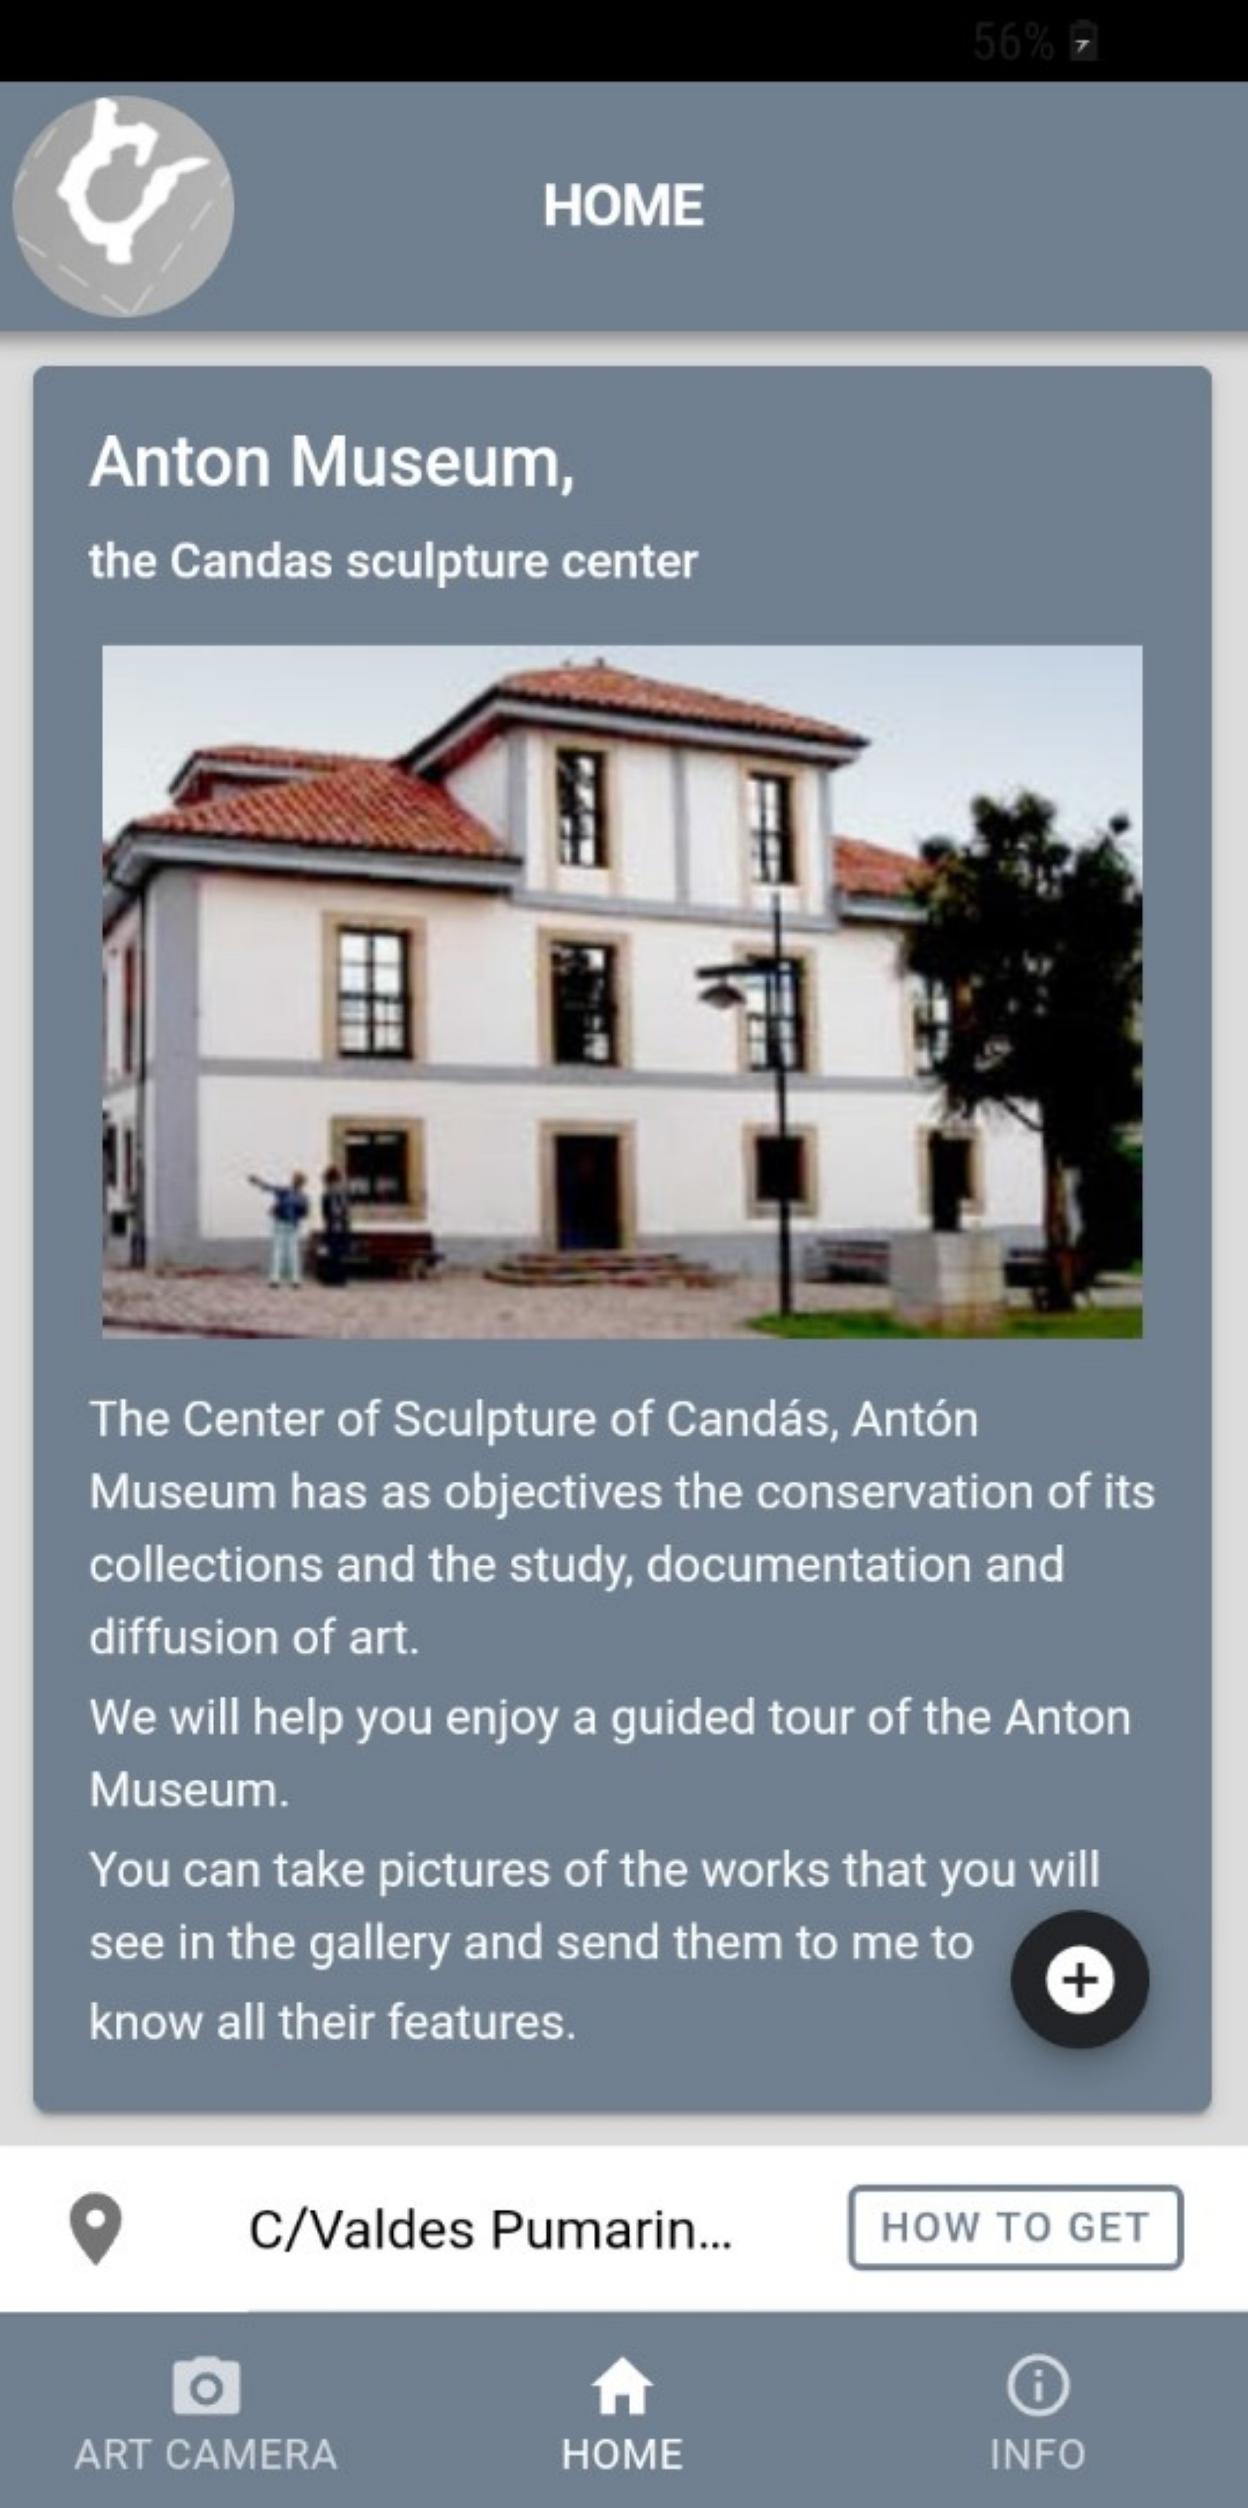 Una parte de la aplicación, que explica parte del museo en inglés.